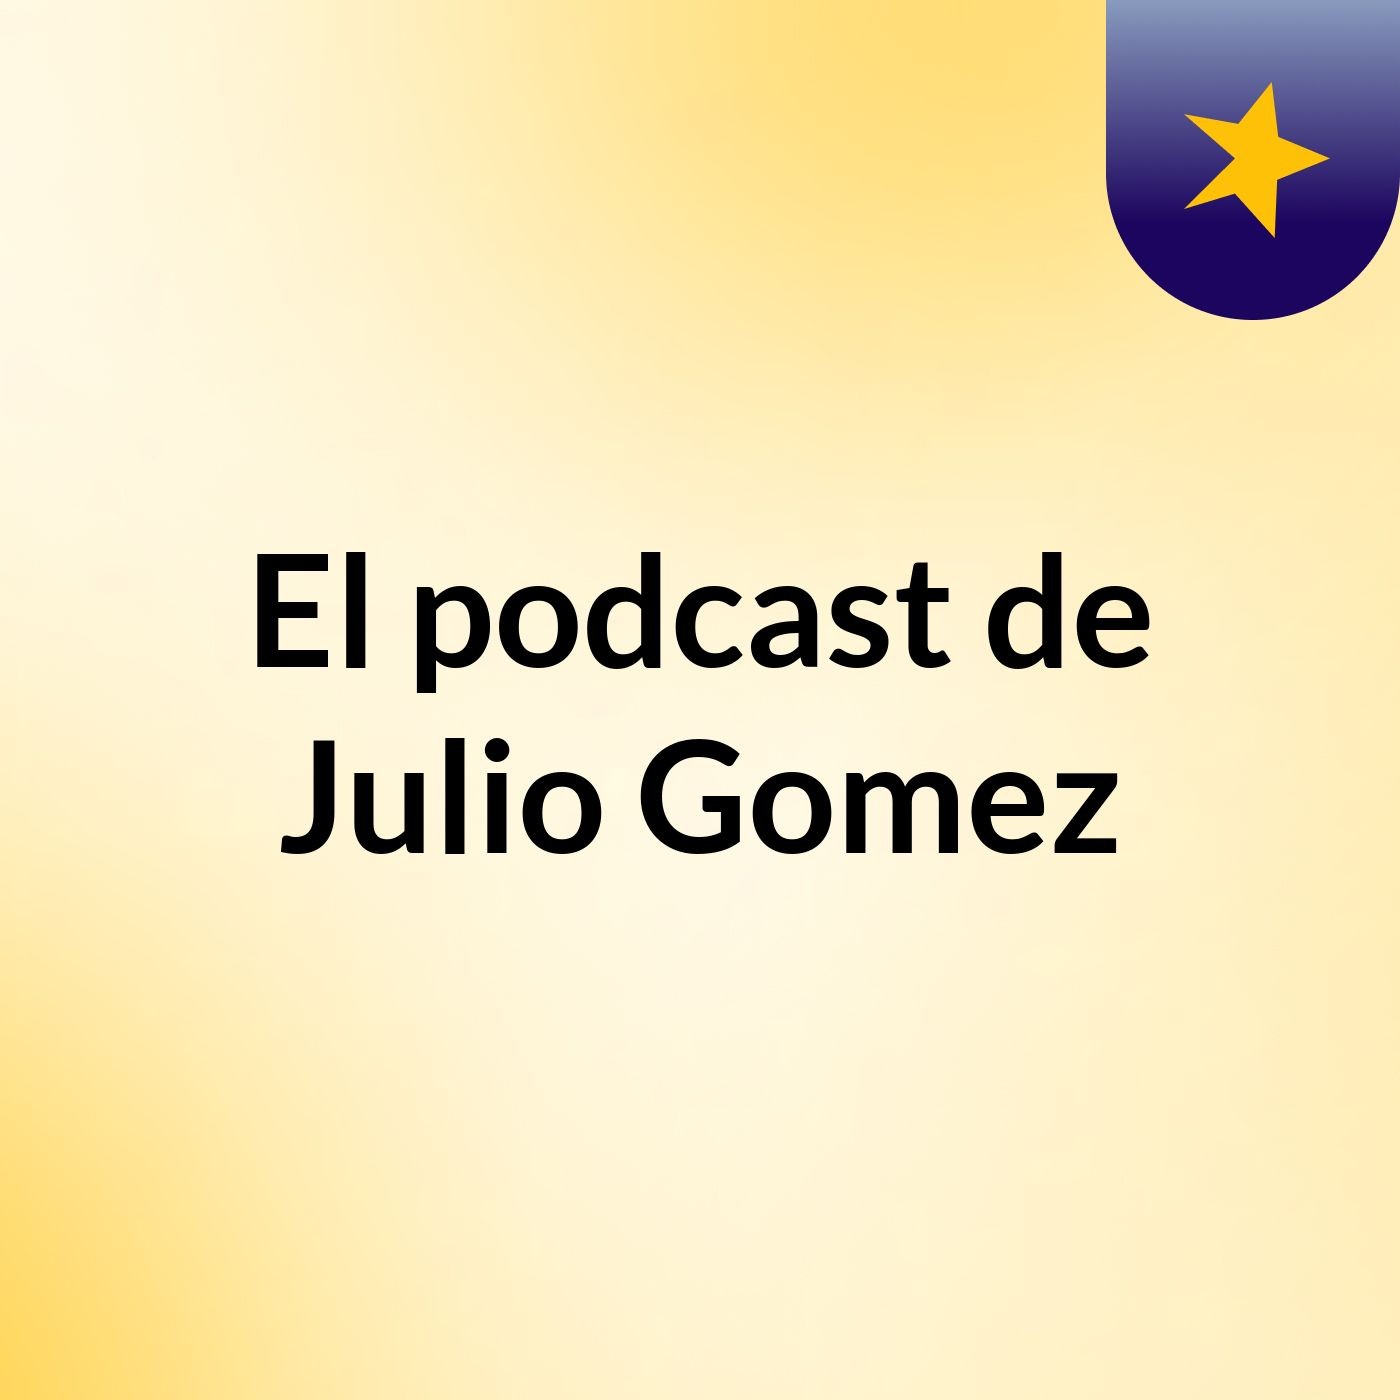 El podcast de Julio Gomez